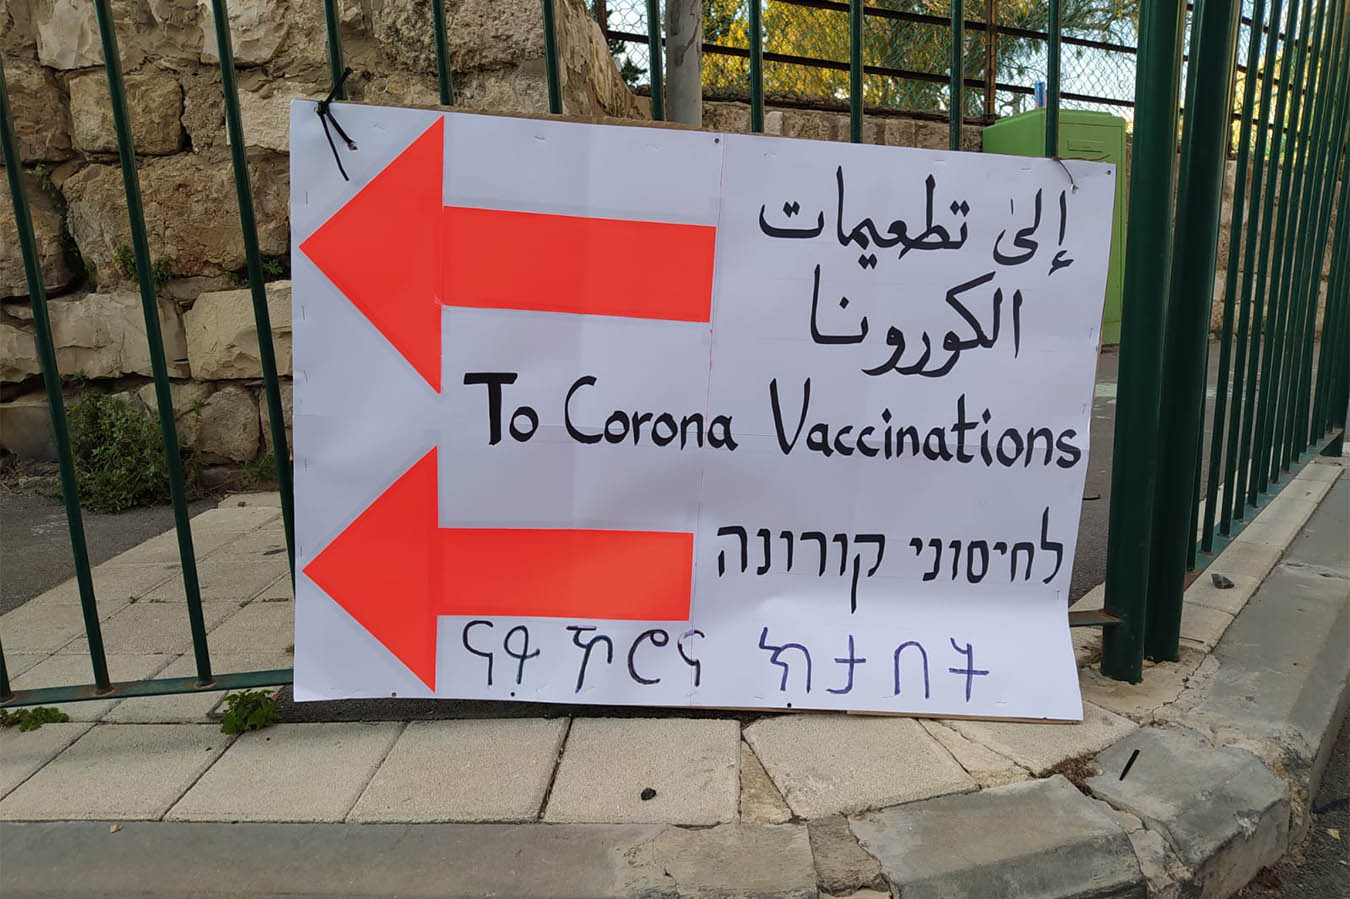 لافتة توجيه إلى مركز التطعيمات لمن ليس لديهم مكانة قانونية في حيفا. (تصوير: ياهل فرج)